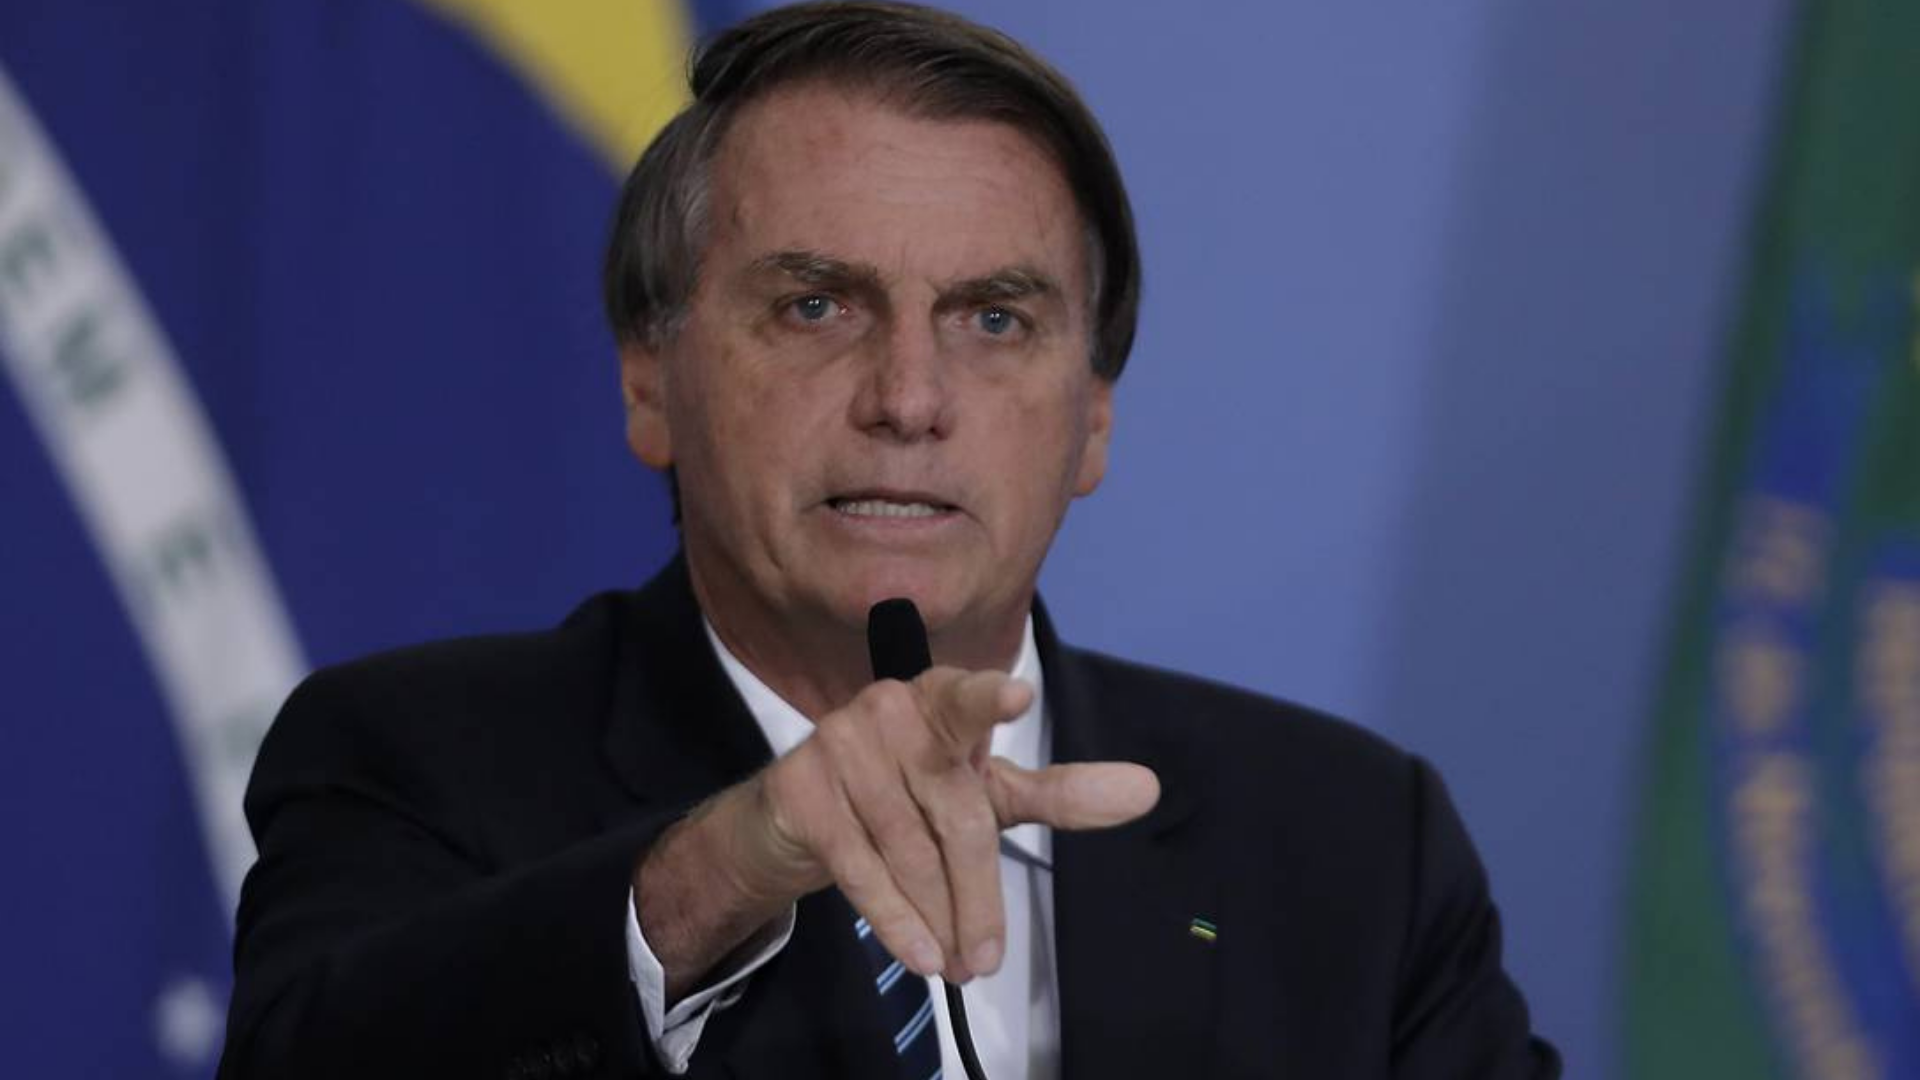 O presidente Jair Bolsonaro elogia a economia. Ele aparece em foto com o indicador apontado, verbalizando algo. Com um fundo azul. ele usa terno preto.